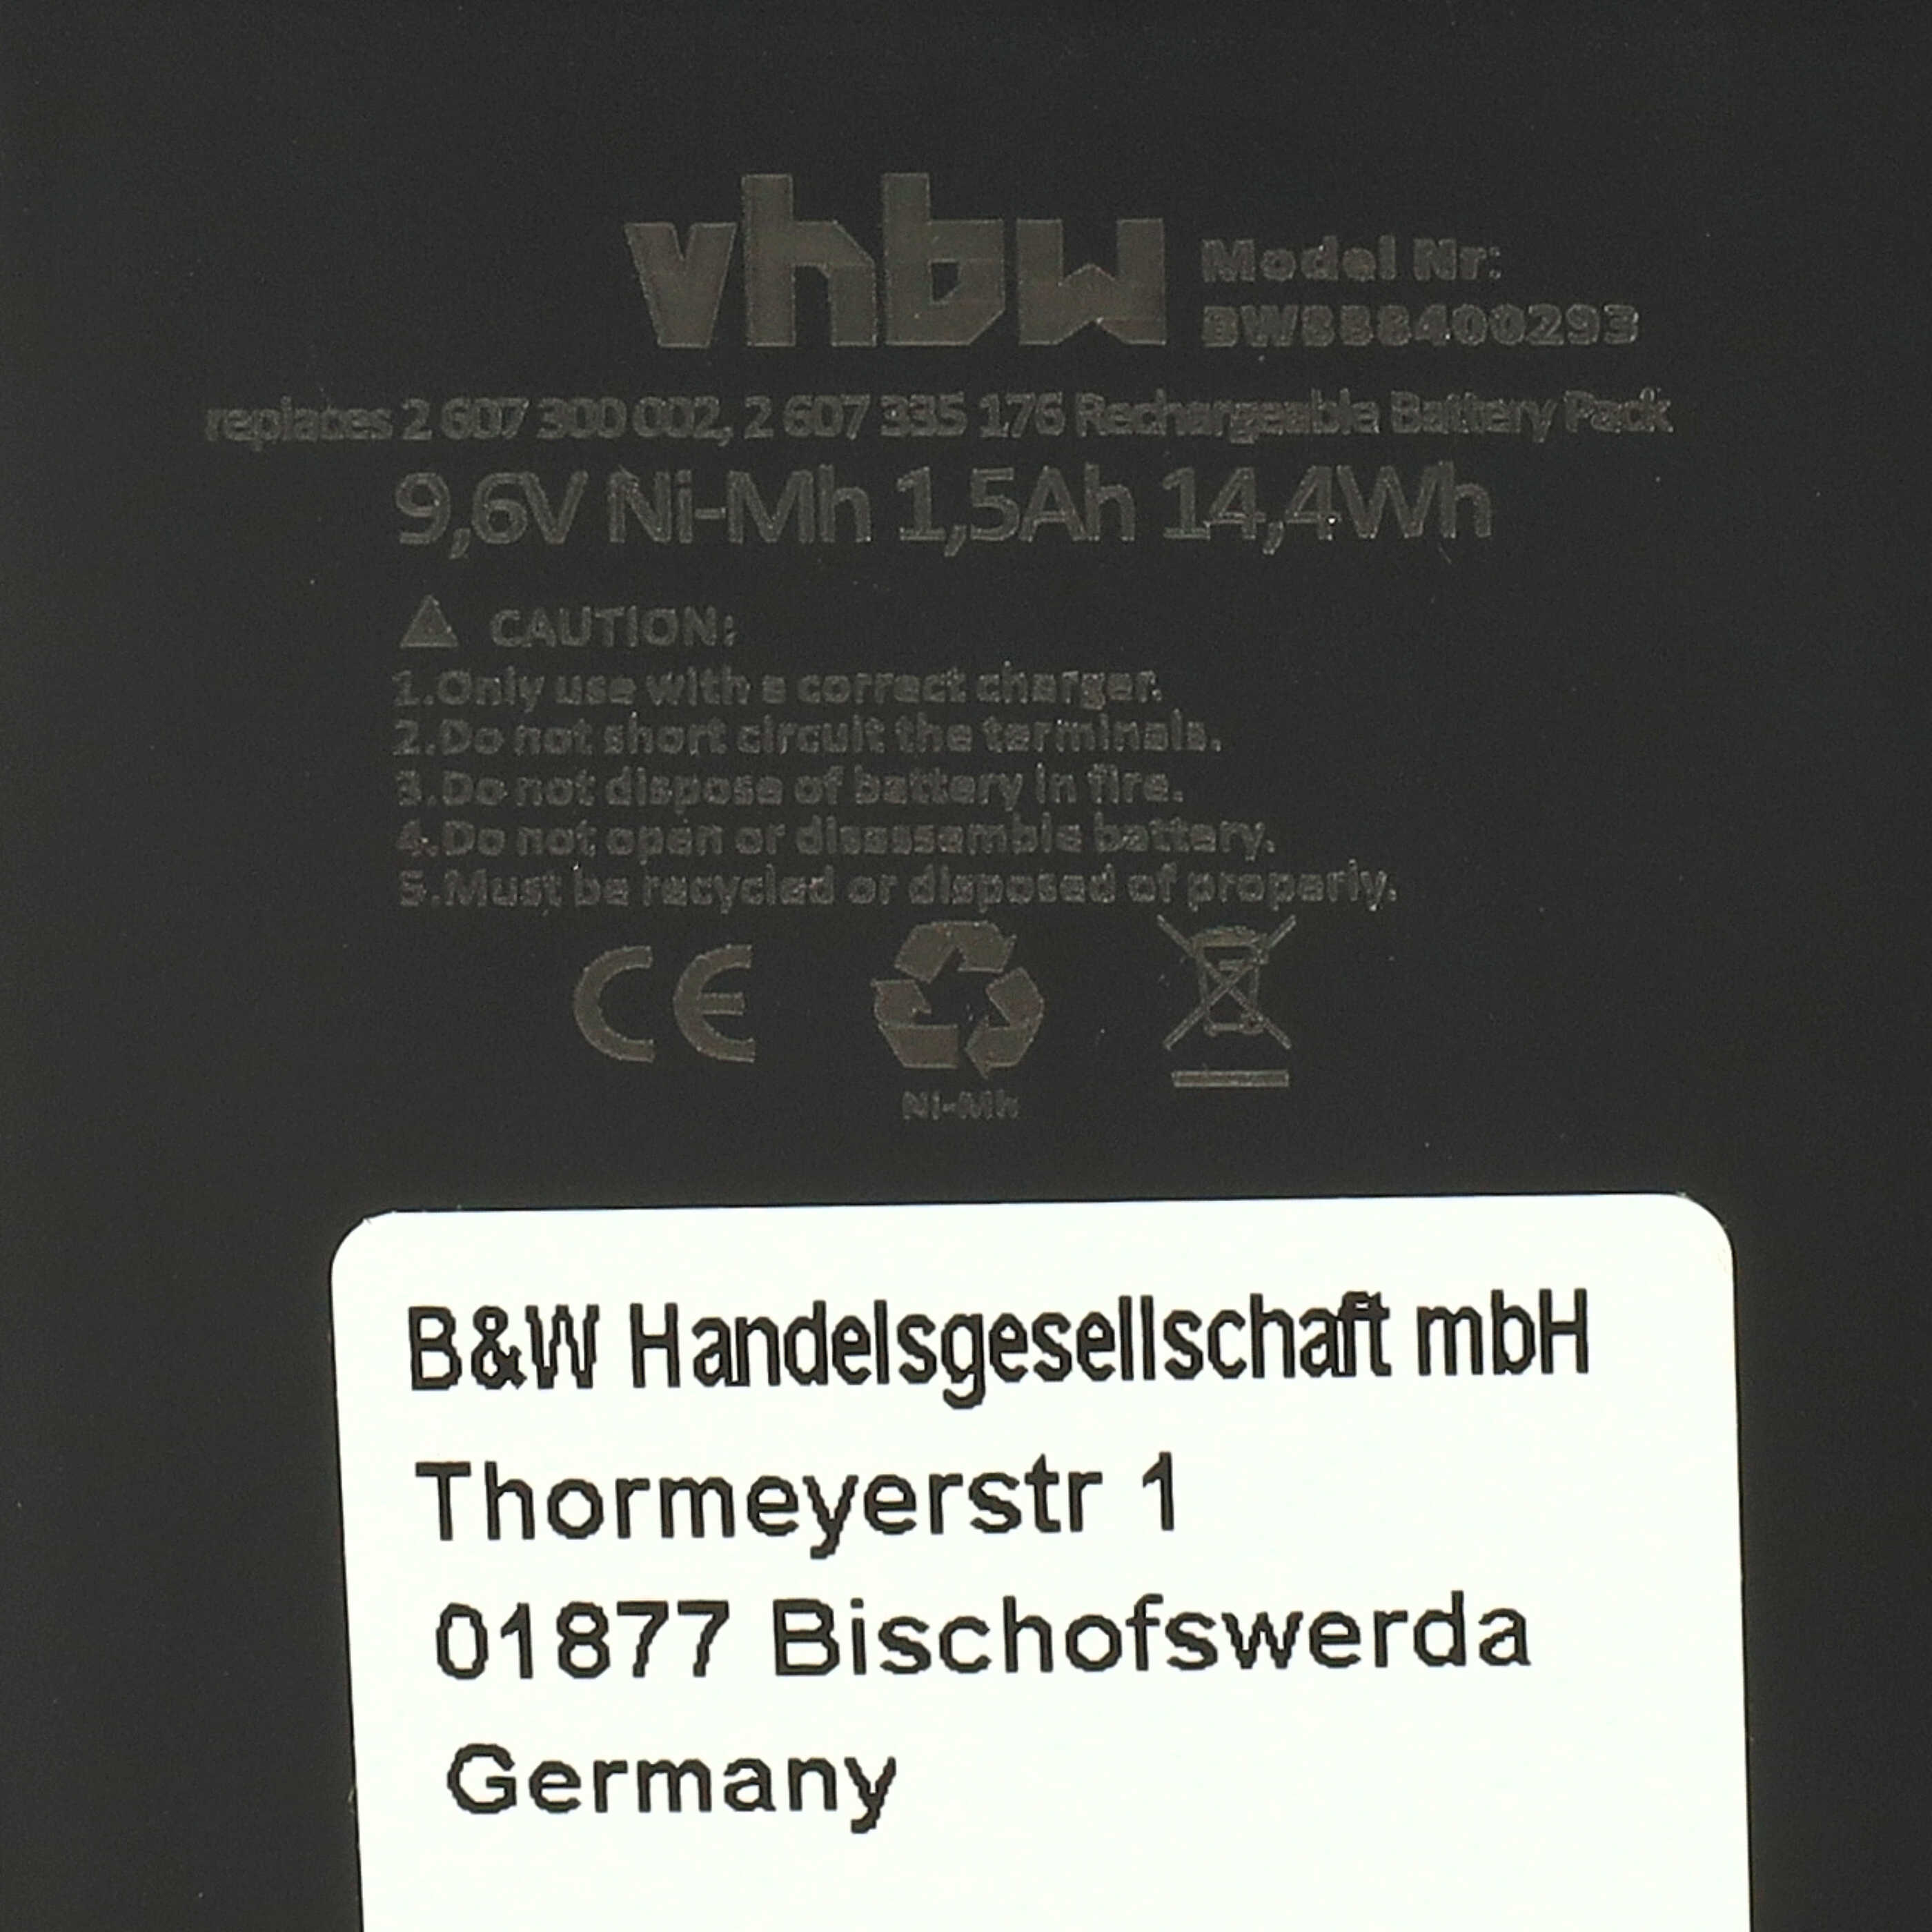 Batteria per attrezzo sostituisce Bosch 2607300002, 26073000002, 2 607 3000 002 - 1500 mAh, 9,6 V, NiMH